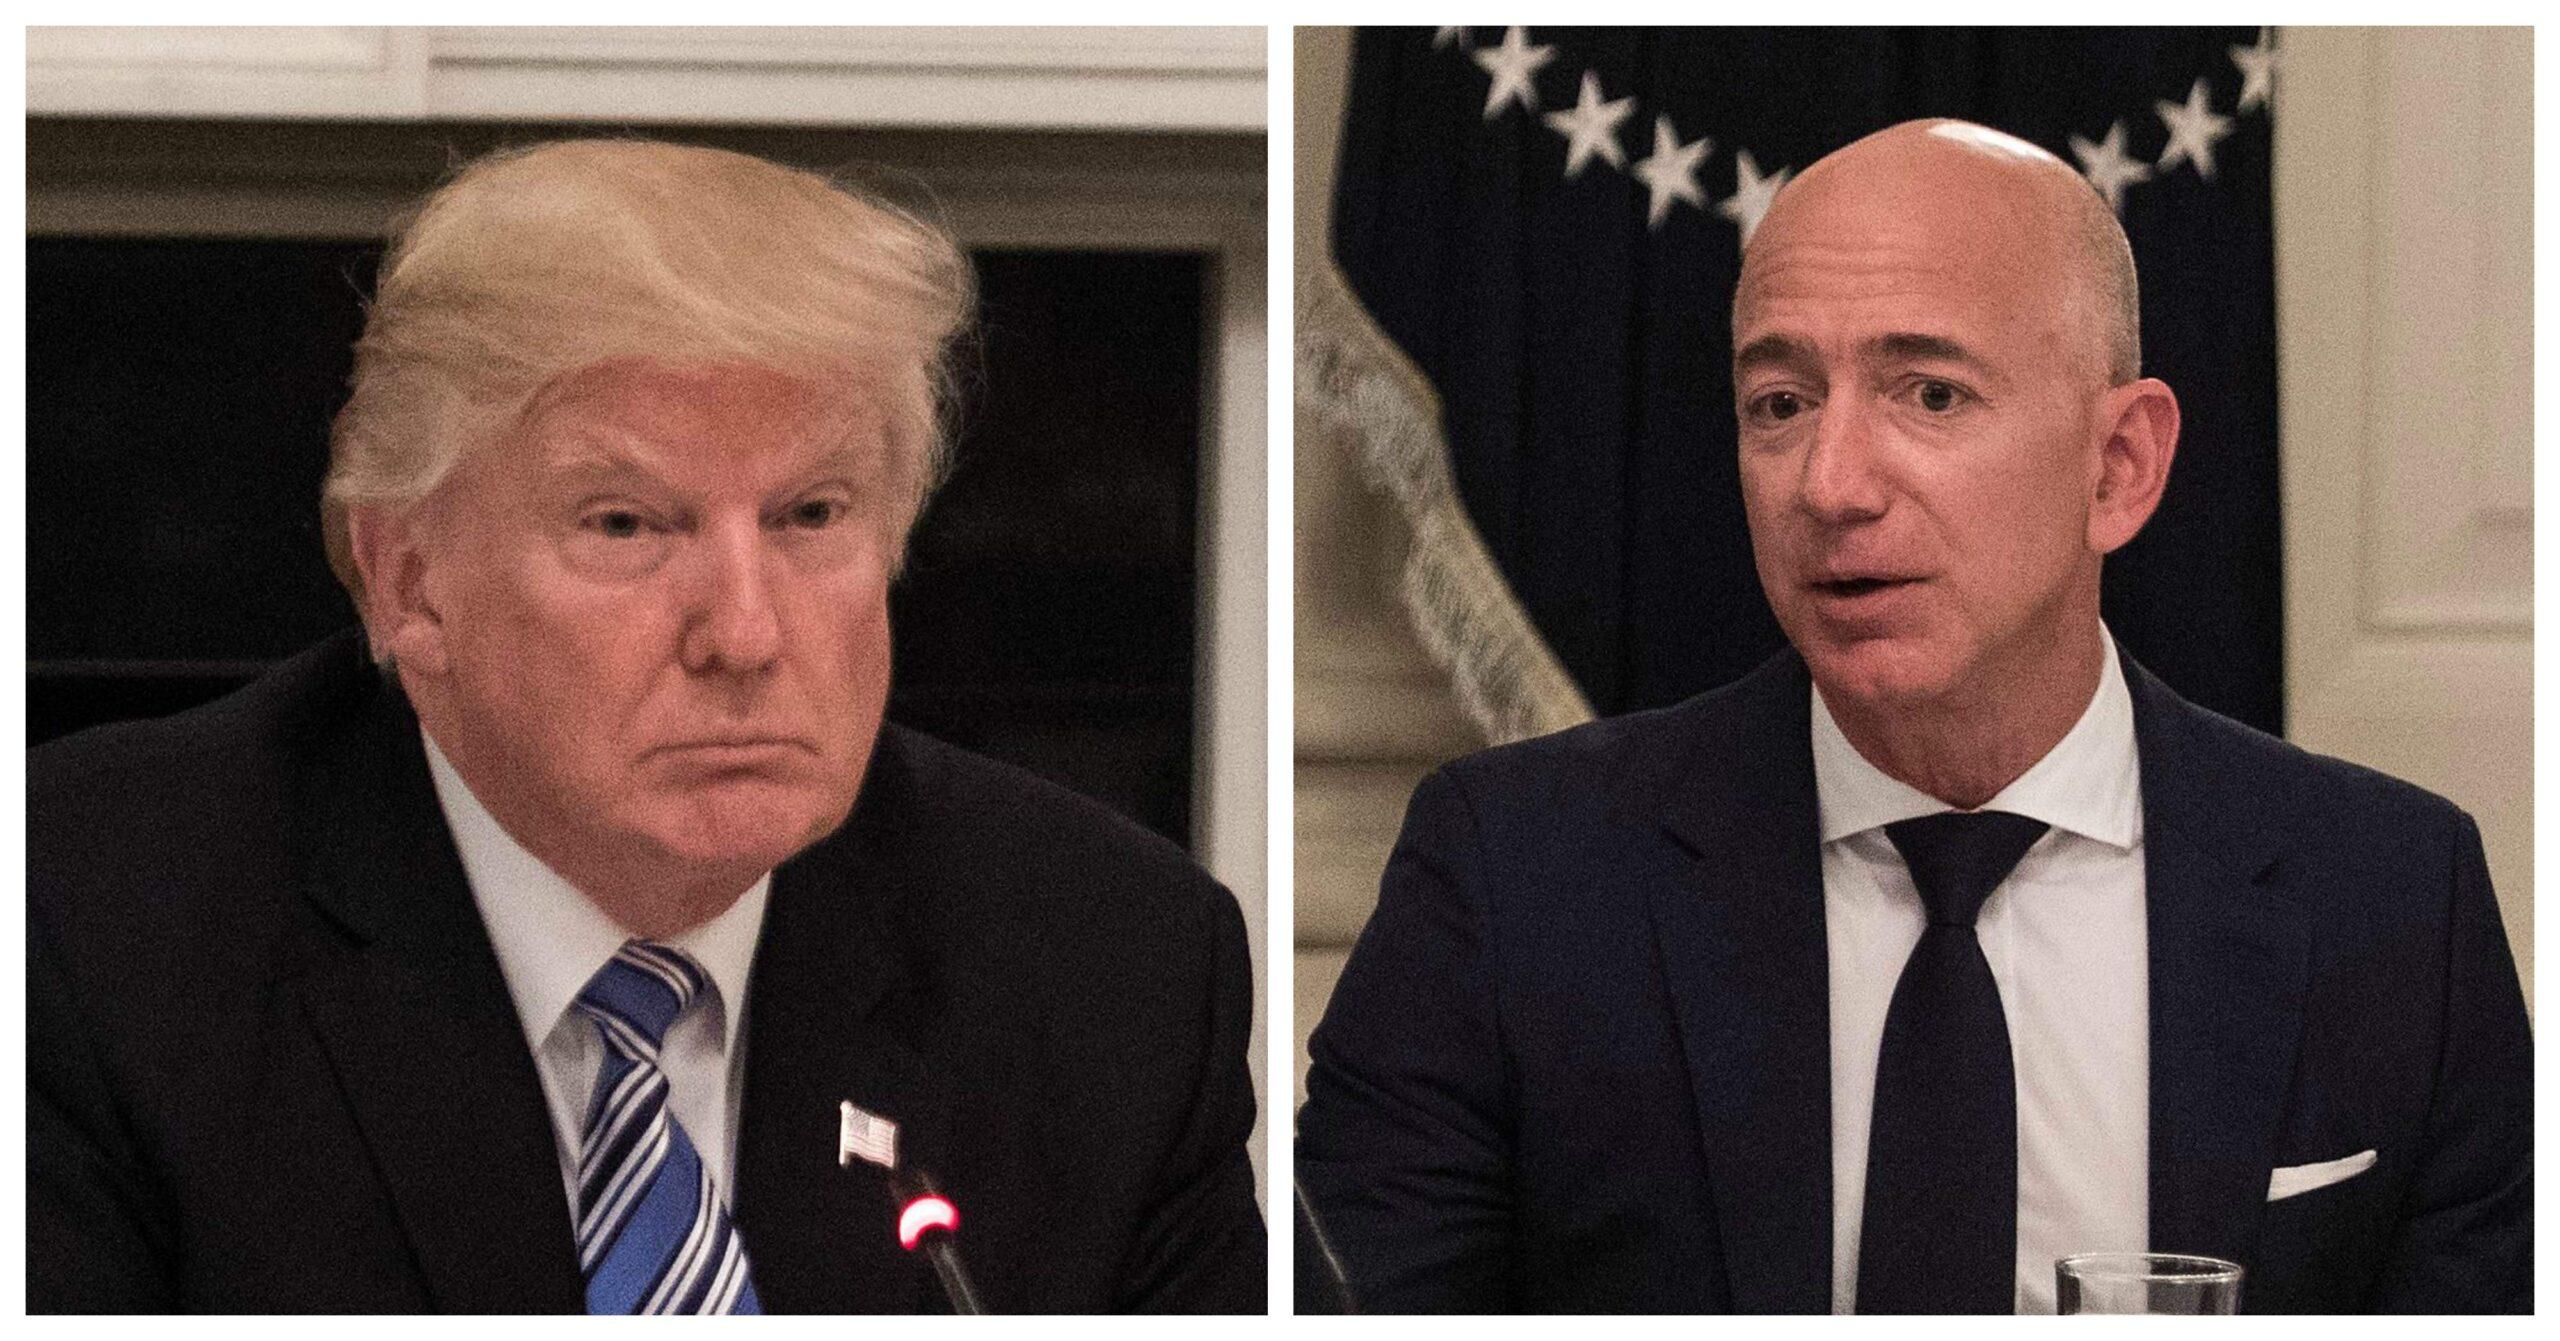 Trump le pega a Amazon, habla mal de la empresa en Twitter y la hace perder millones